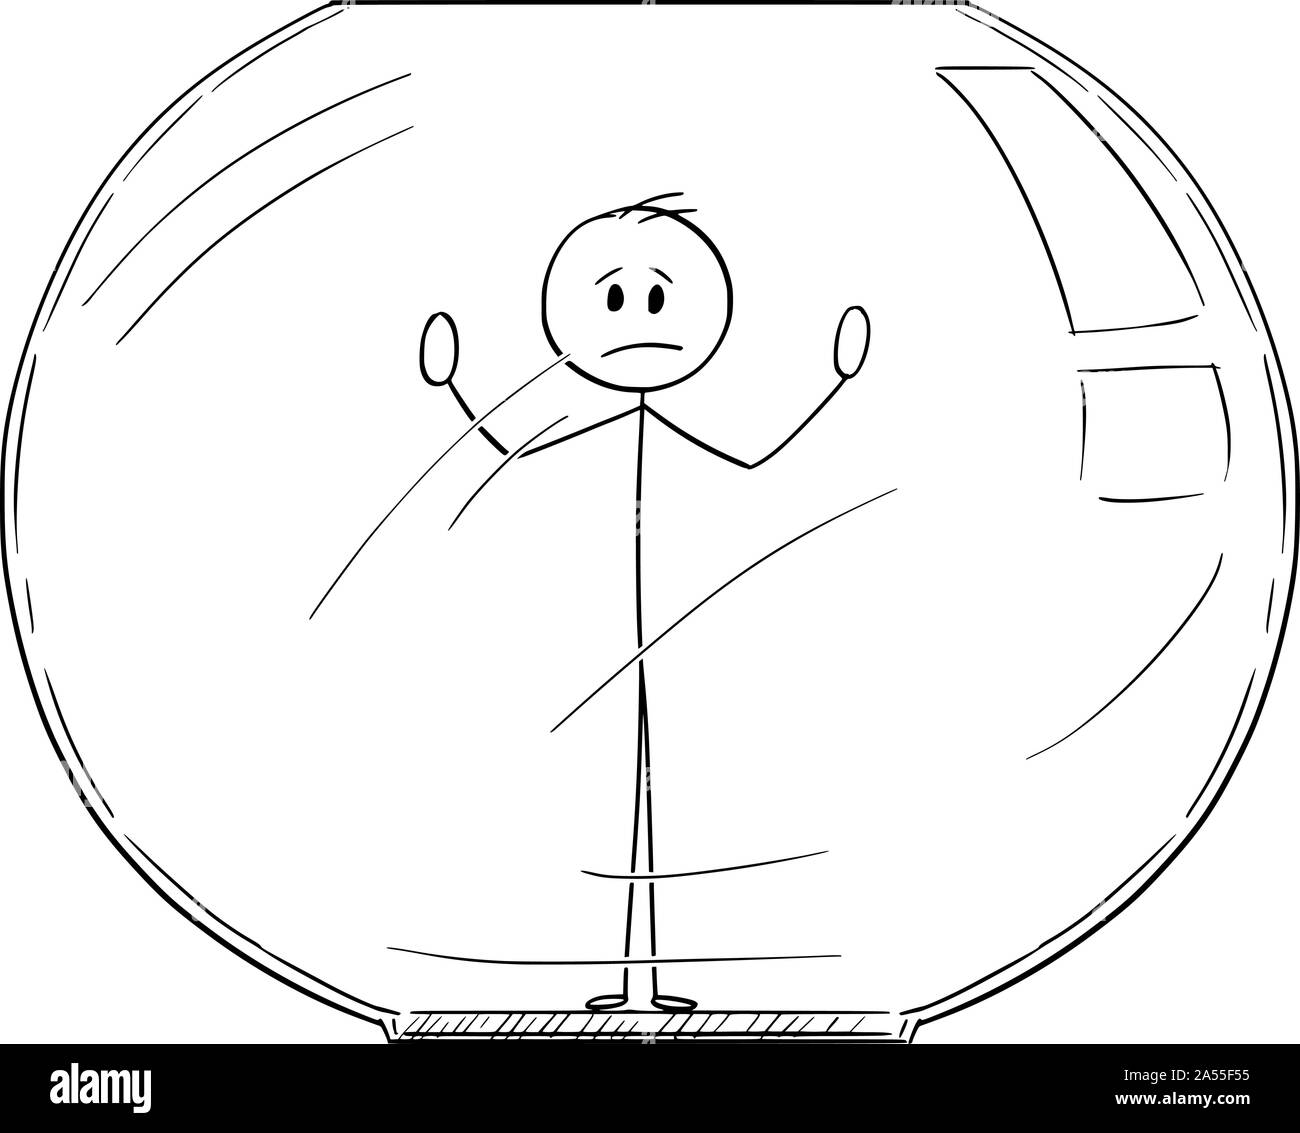 Vector cartoon stick figure dessin illustration conceptuelle de l'homme ou homme coincé à l'intérieur ou de l'Aquarium fish tank. De l'entreprise Concept psychiatrique. Illustration de Vecteur